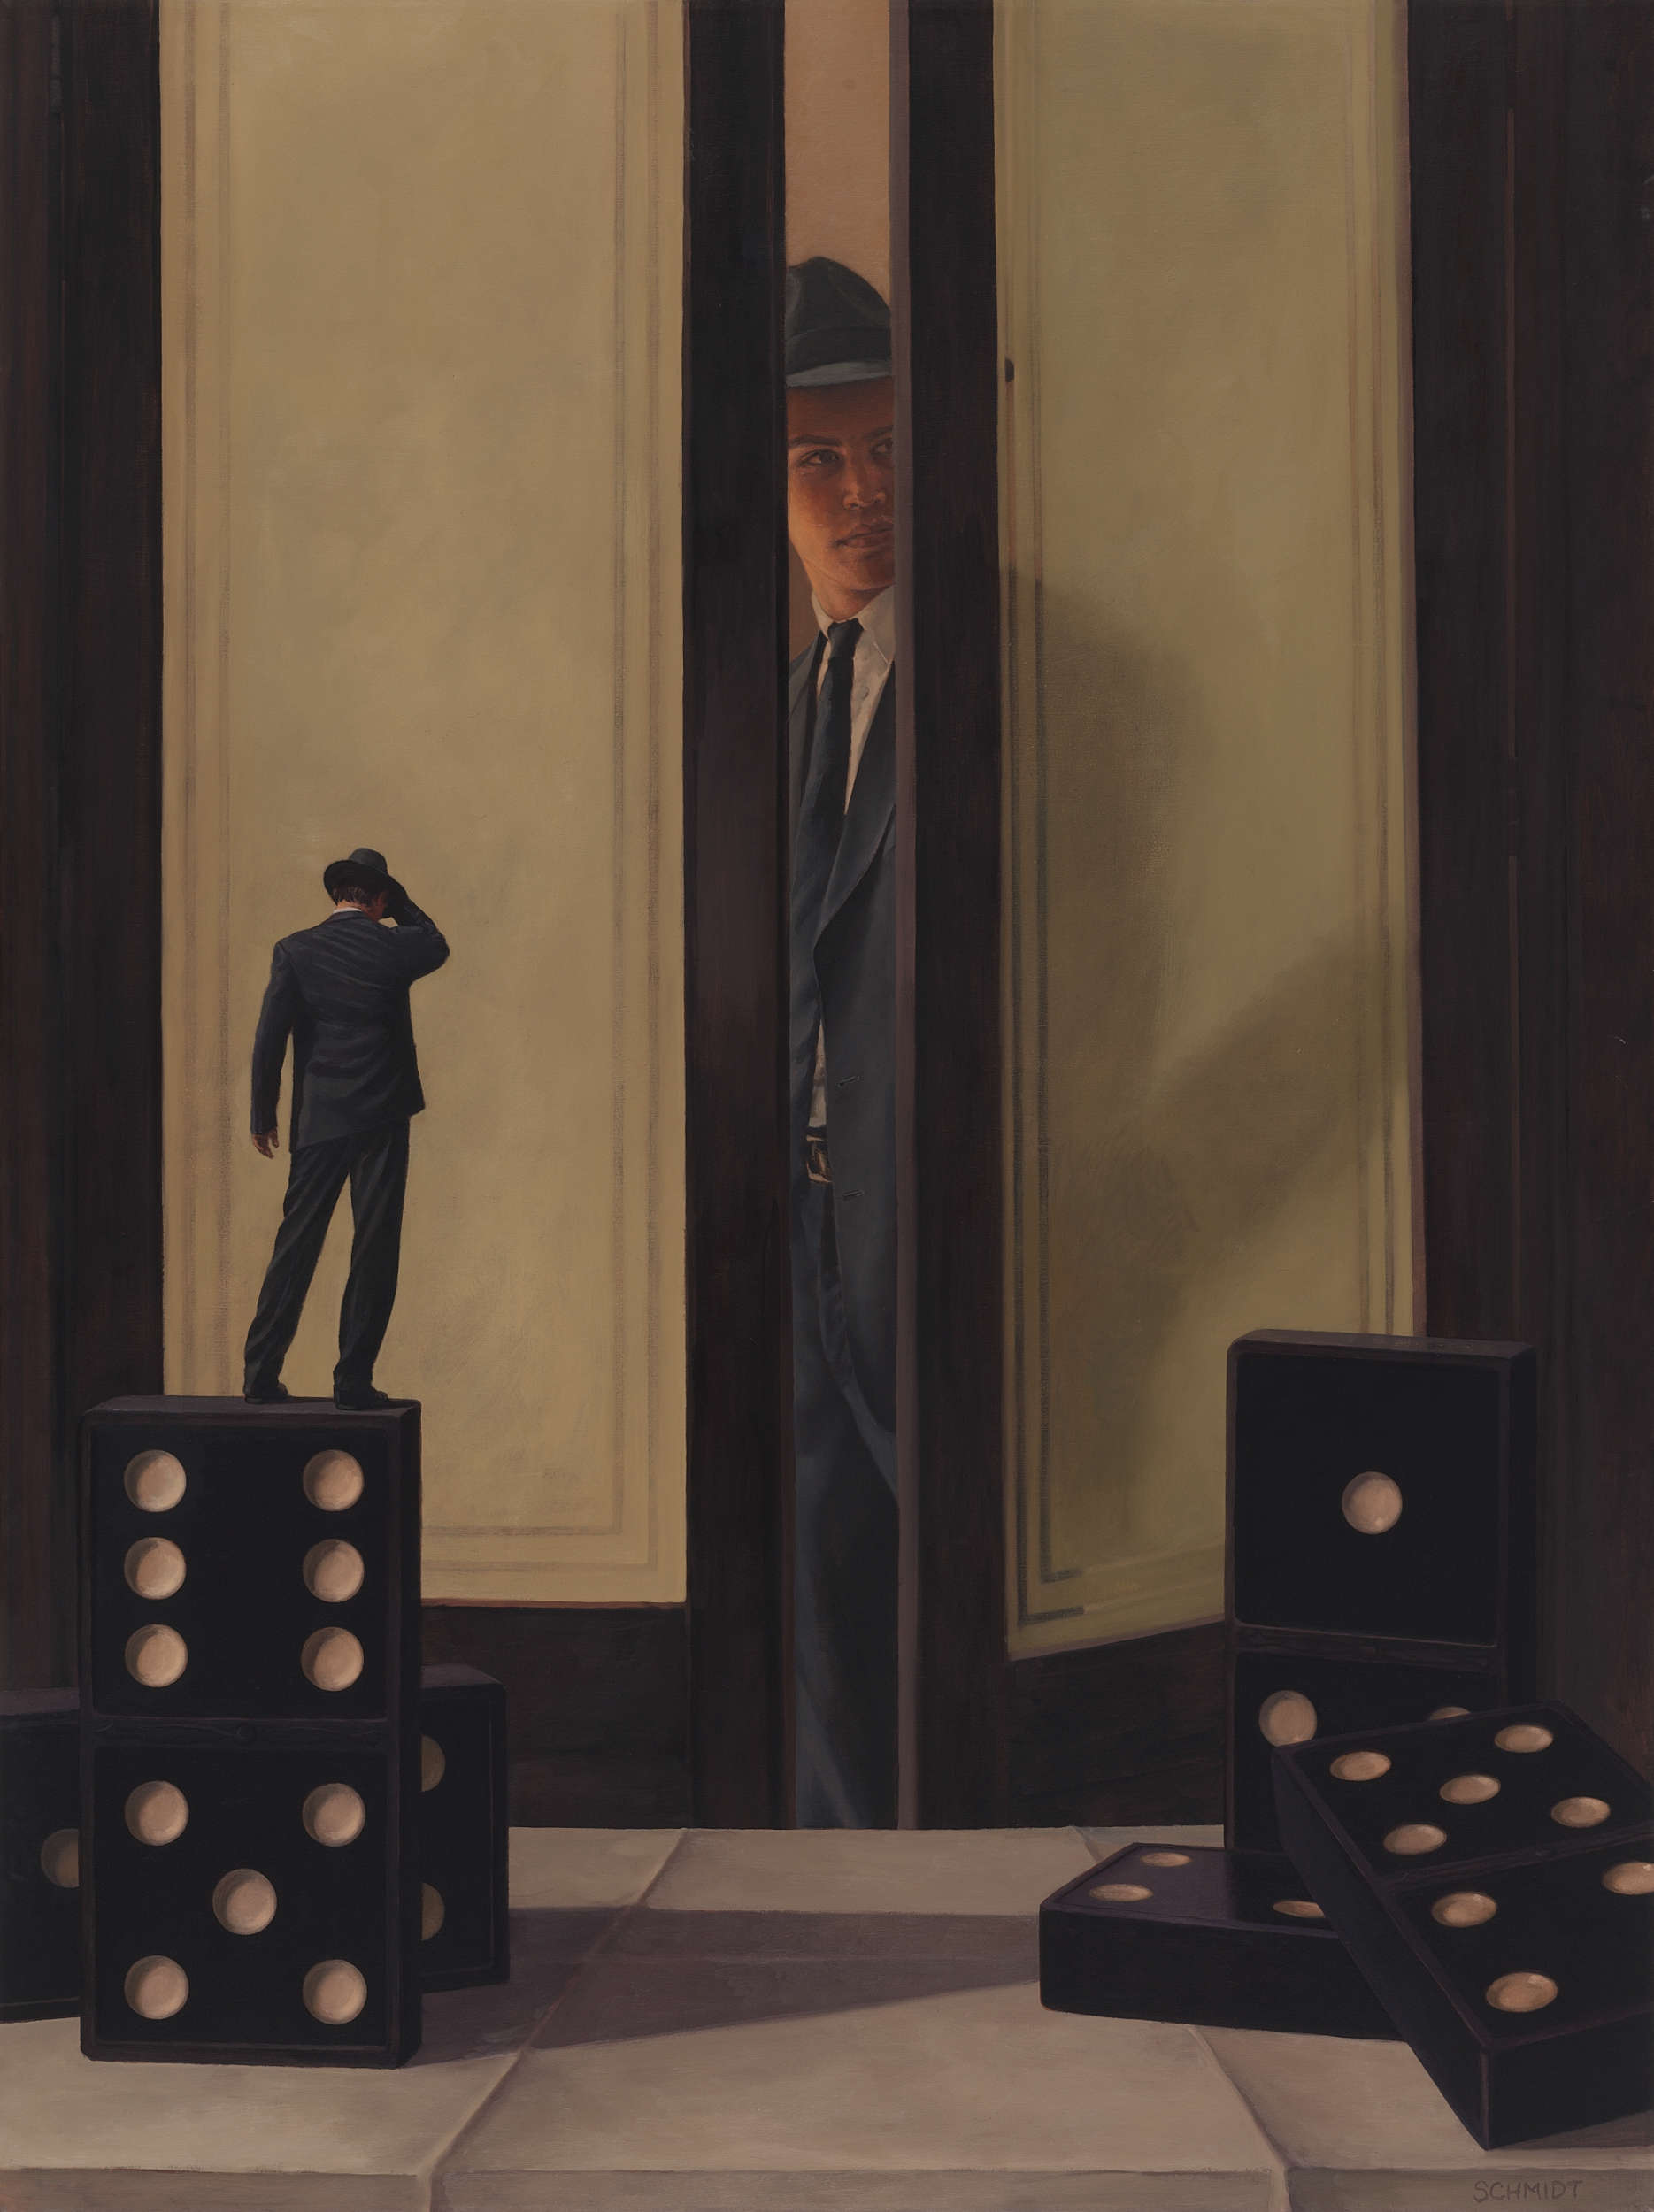 male figure wearing suit and fedora hat, peeking into room, between double doors, dominos, diminutive figure dancing